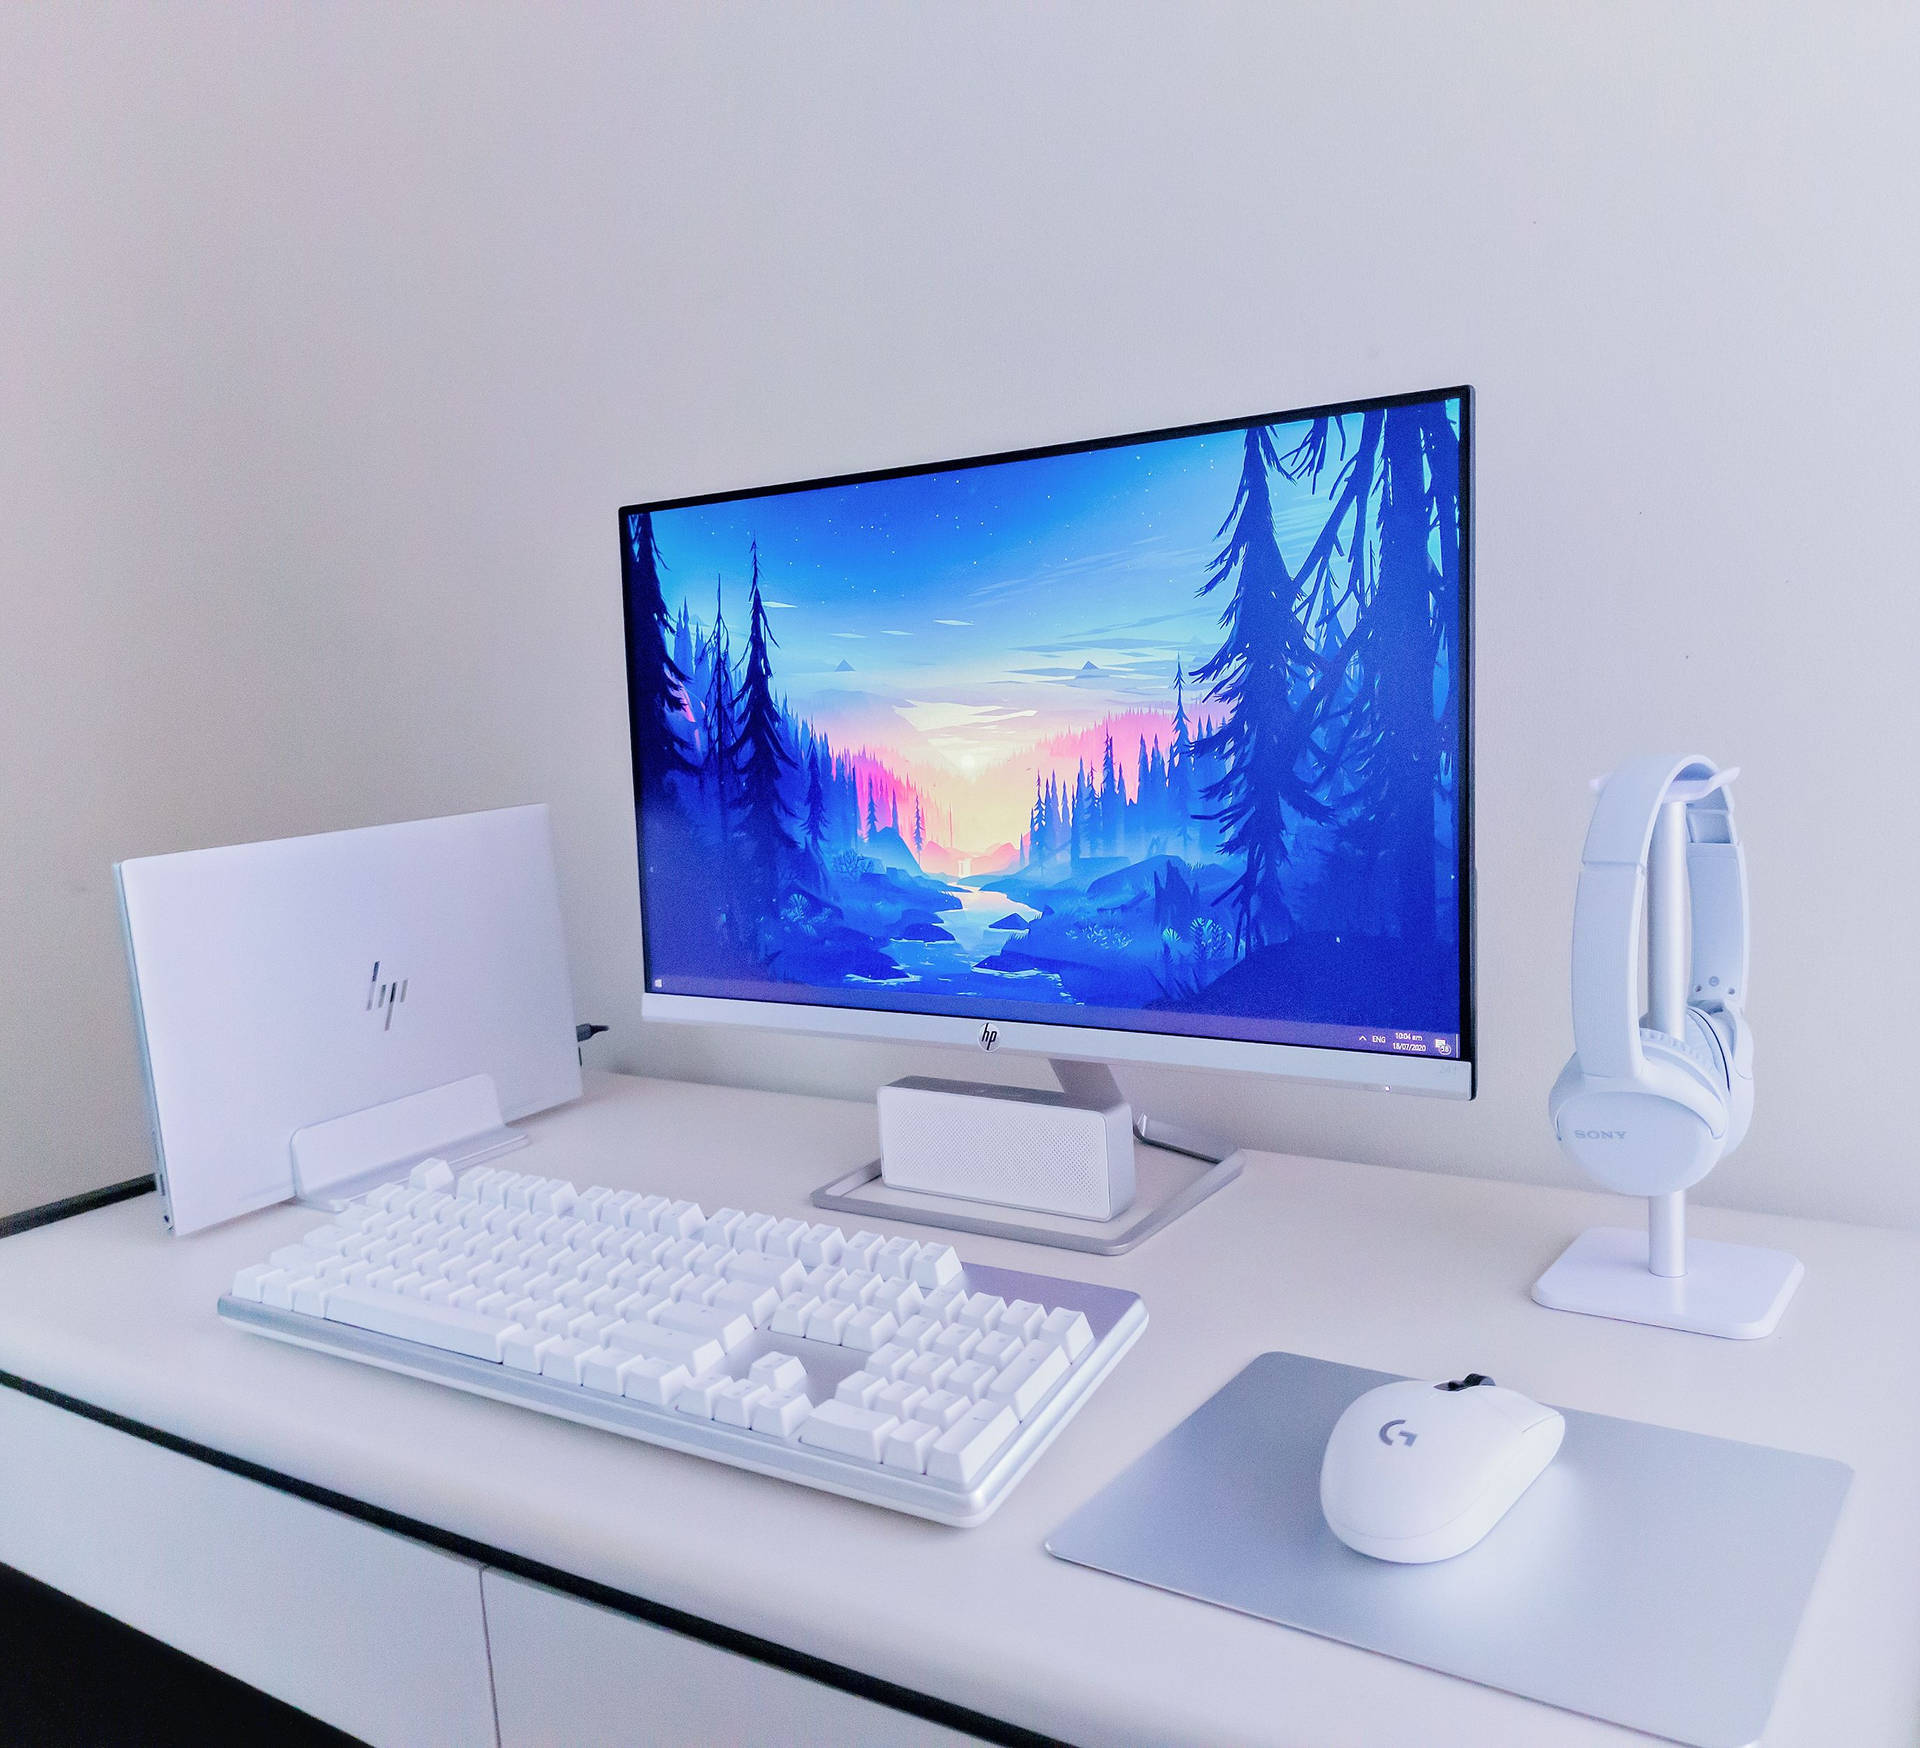 Den hvide PC - et stilrent design for kraftig præstation Wallpaper